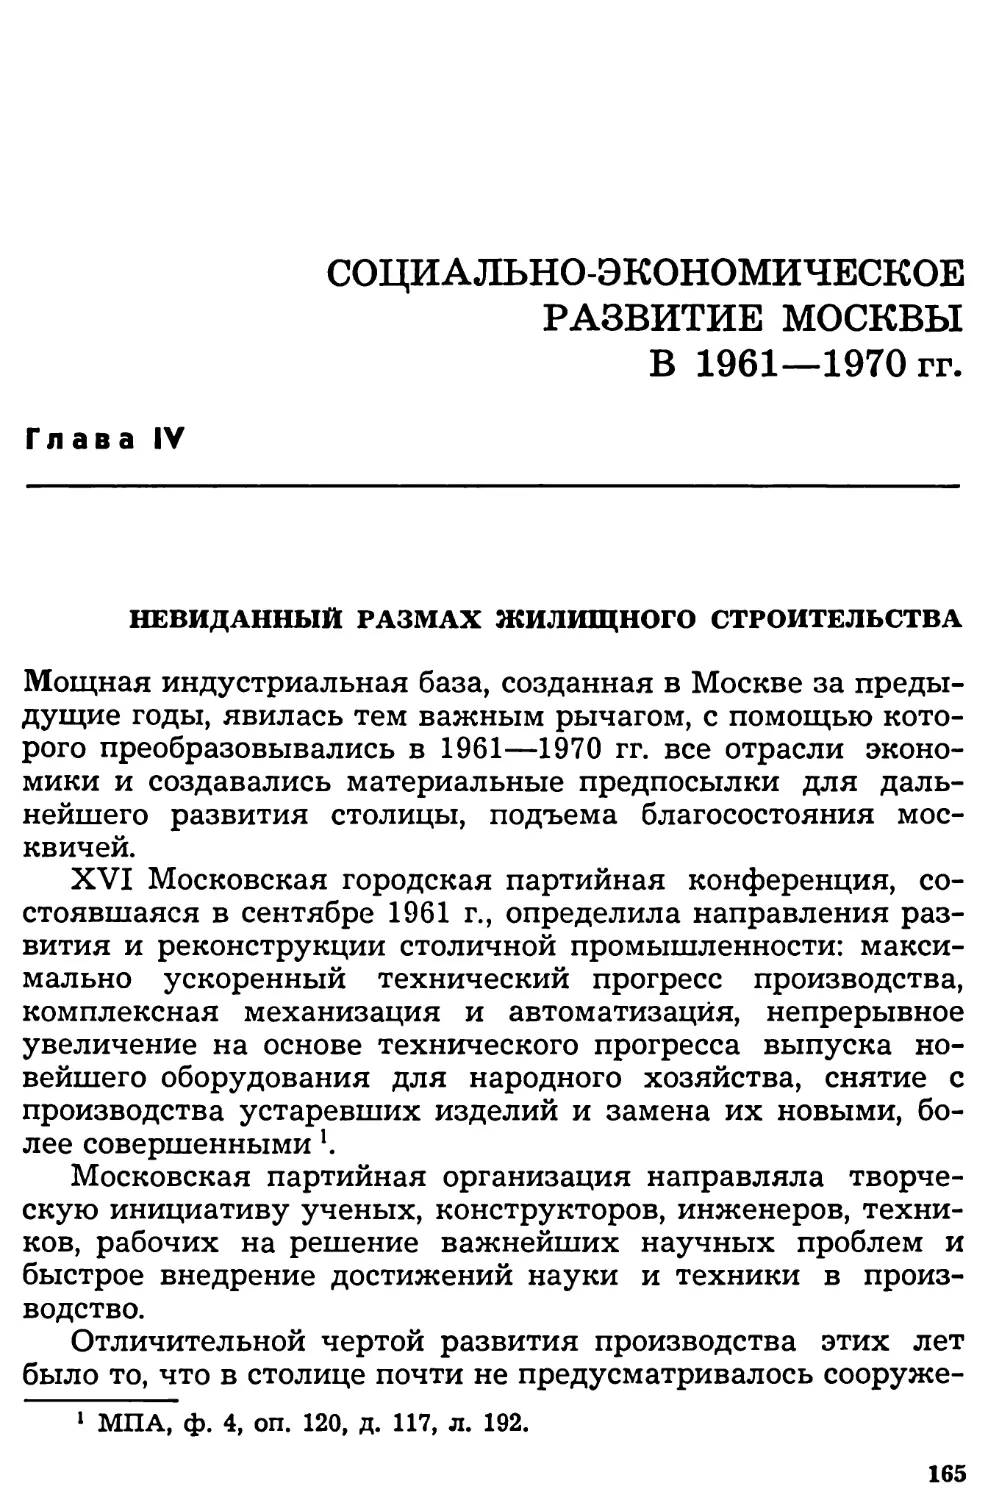 Глава IV. Социально-экономическое развитие Москвы в 1961—1970 гг